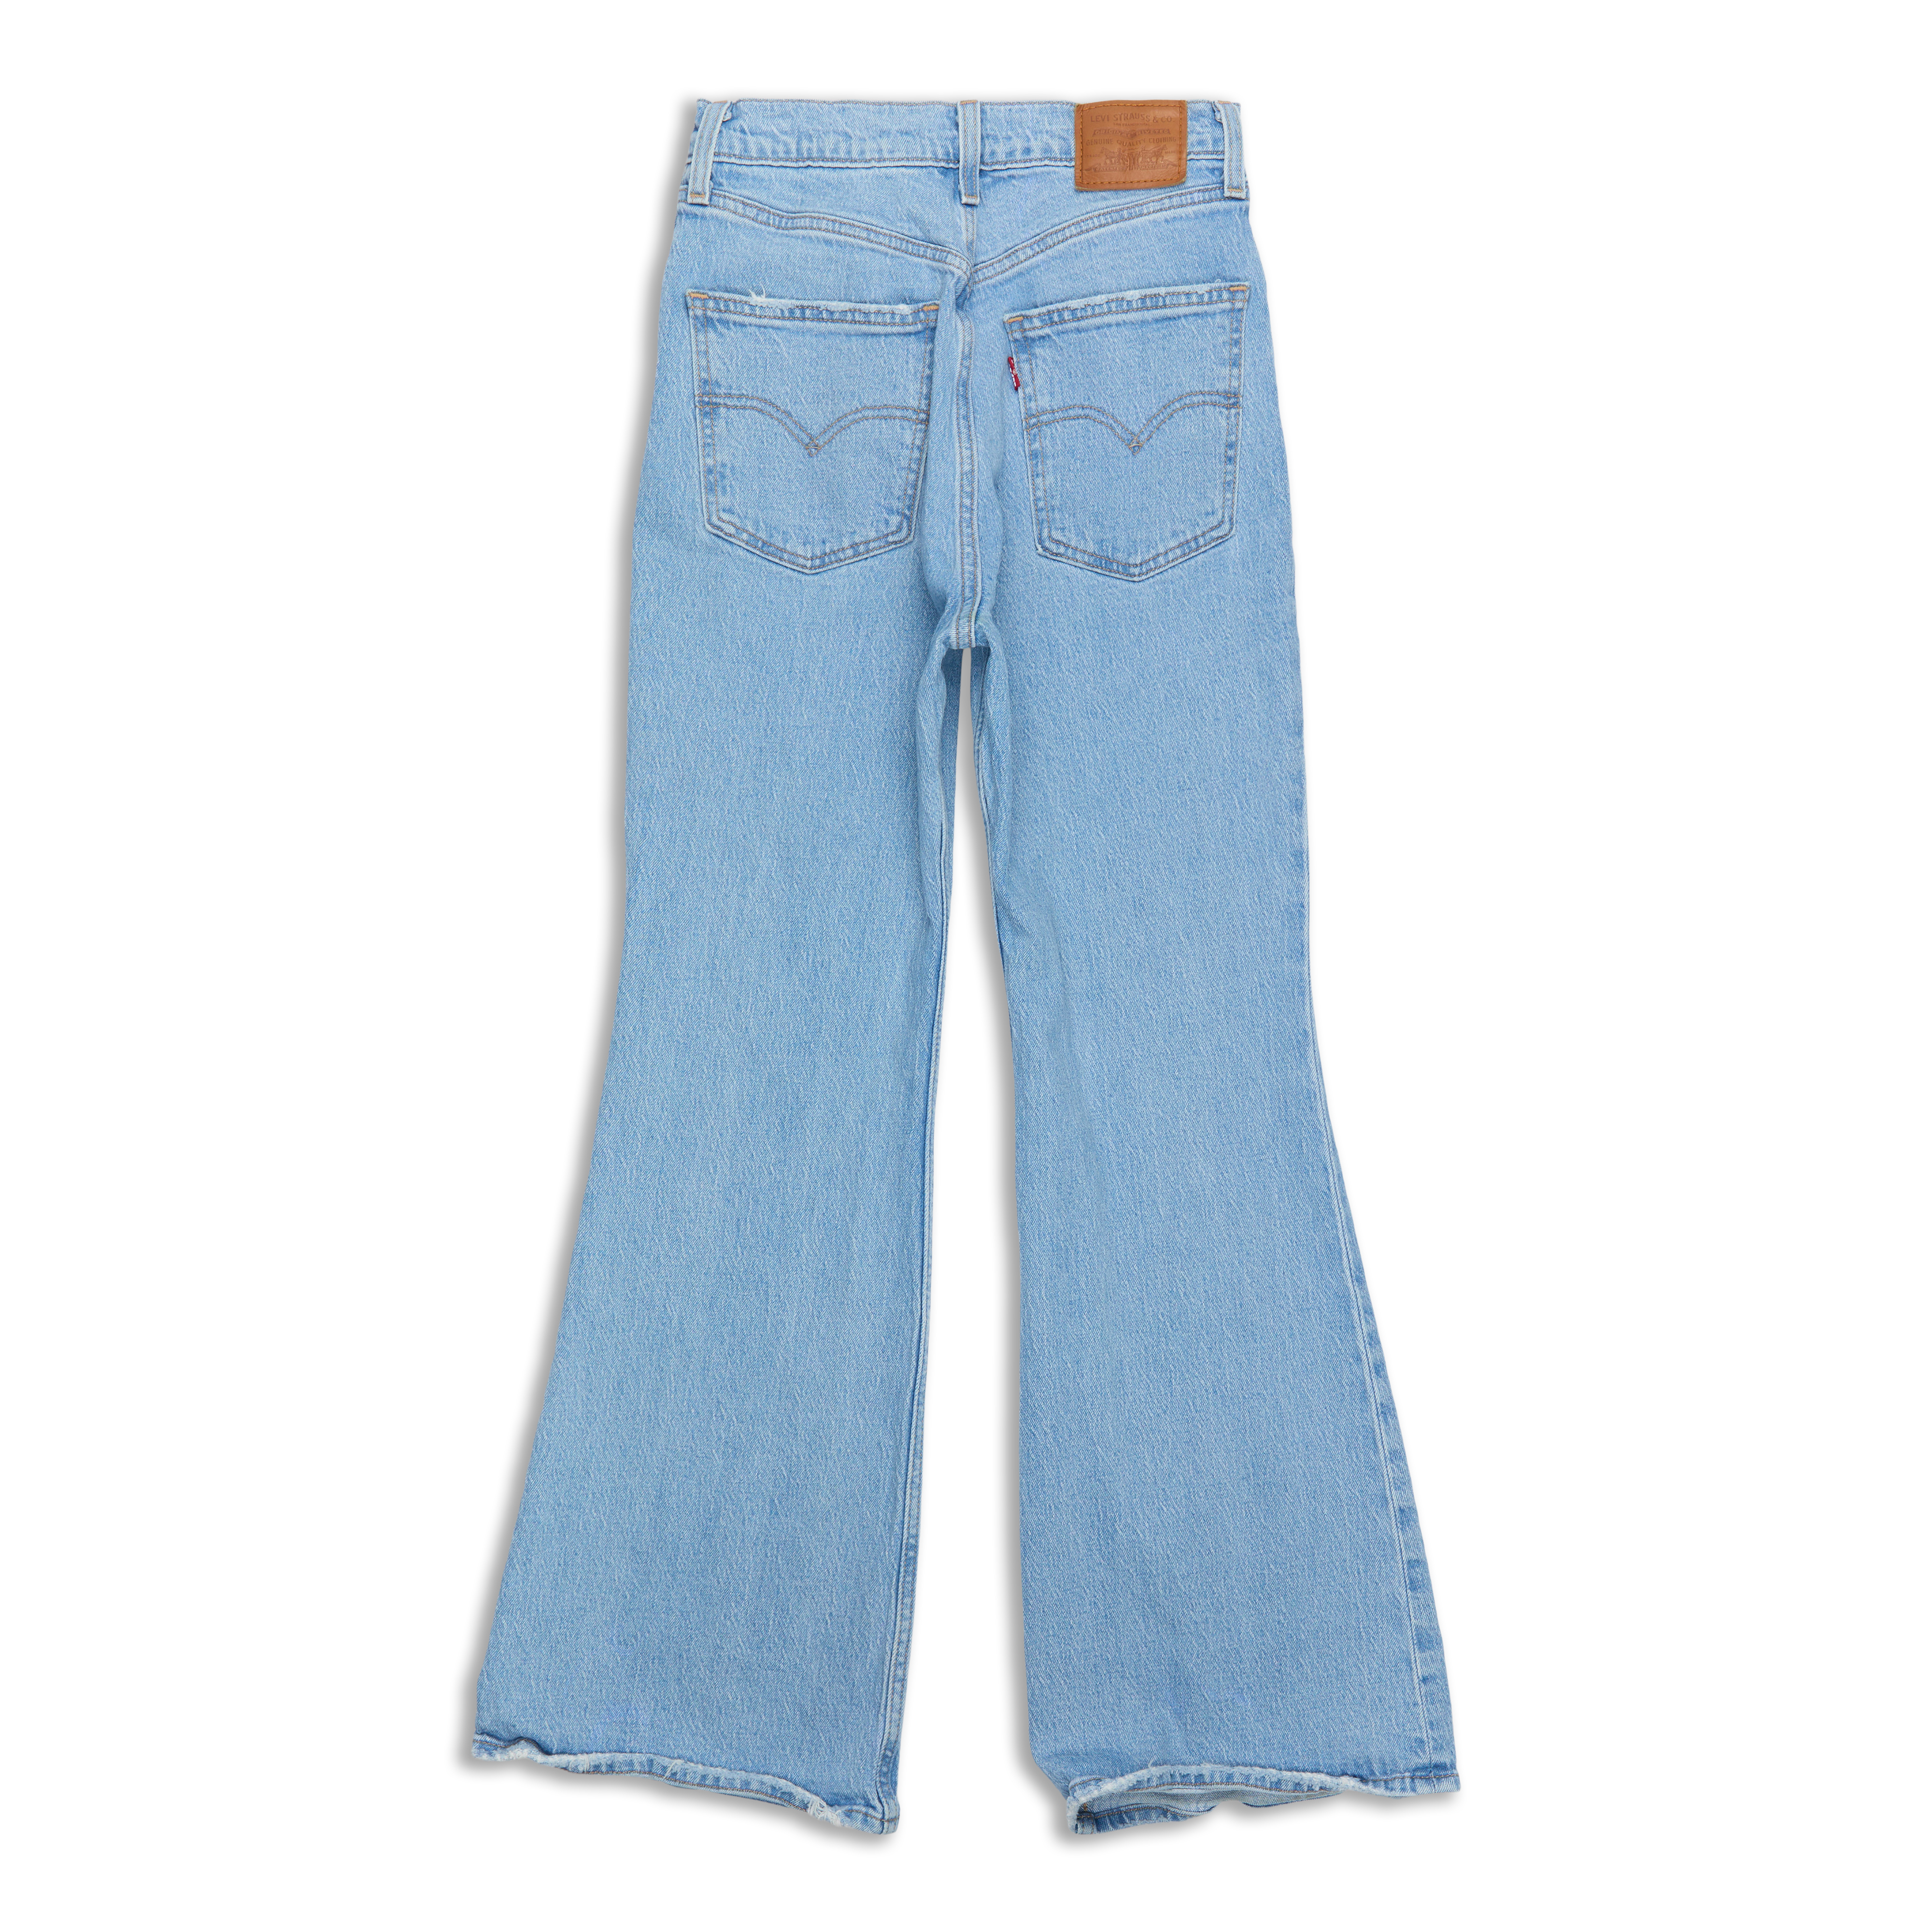 Levis Vintage Flare Women's Jeans Original